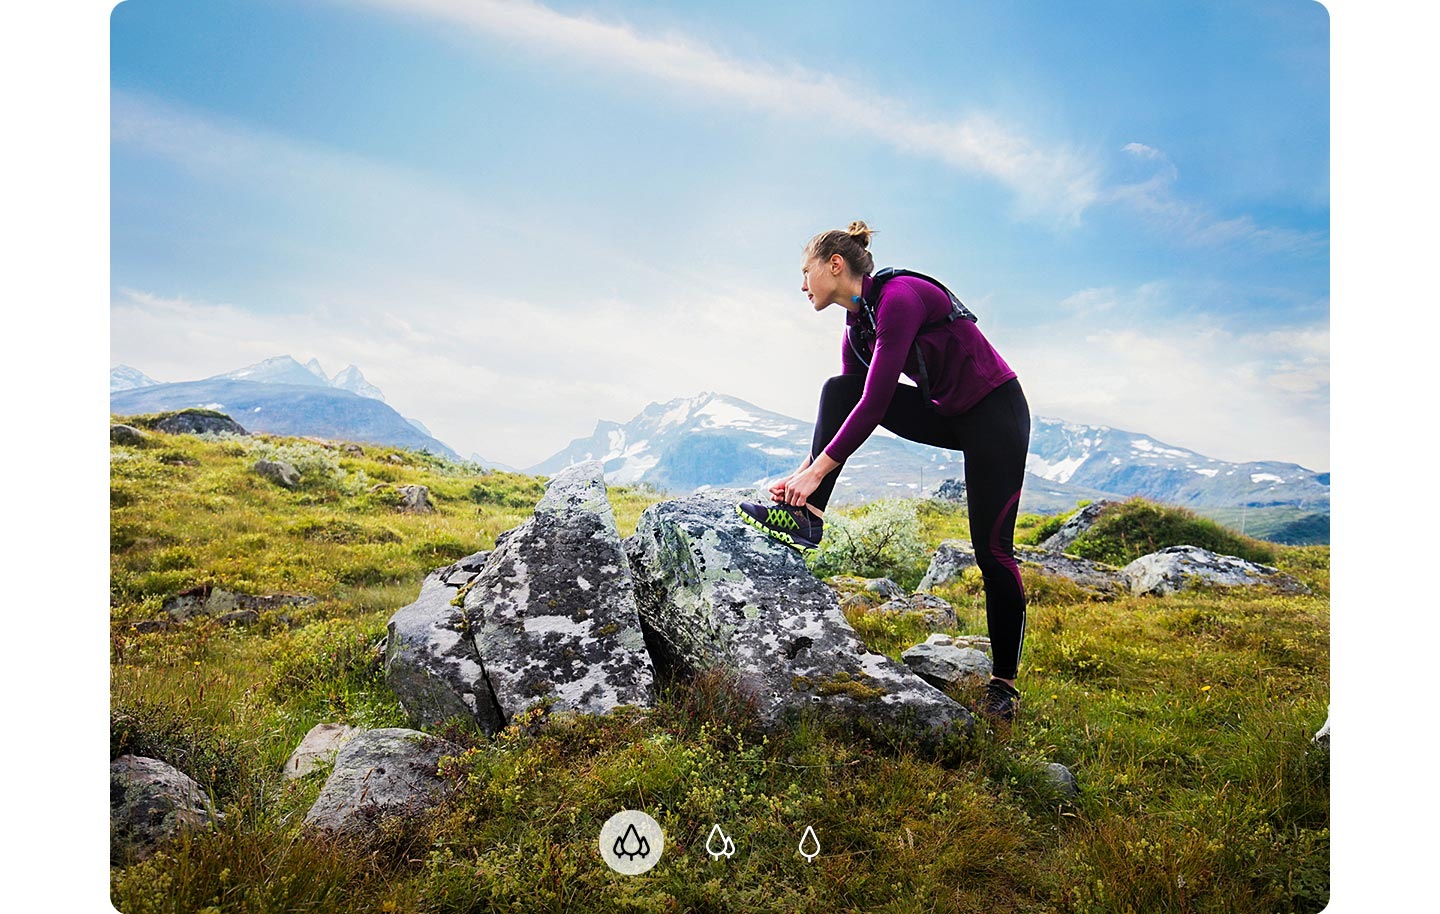 1. Una donna guarda lontano con un piede appoggiato su una roccia e le montagne sullo sfondo, ad indicare che la fotocamera ultra-grandangolare di Galaxy A72 è in grado di fotografare immagini più ampie.